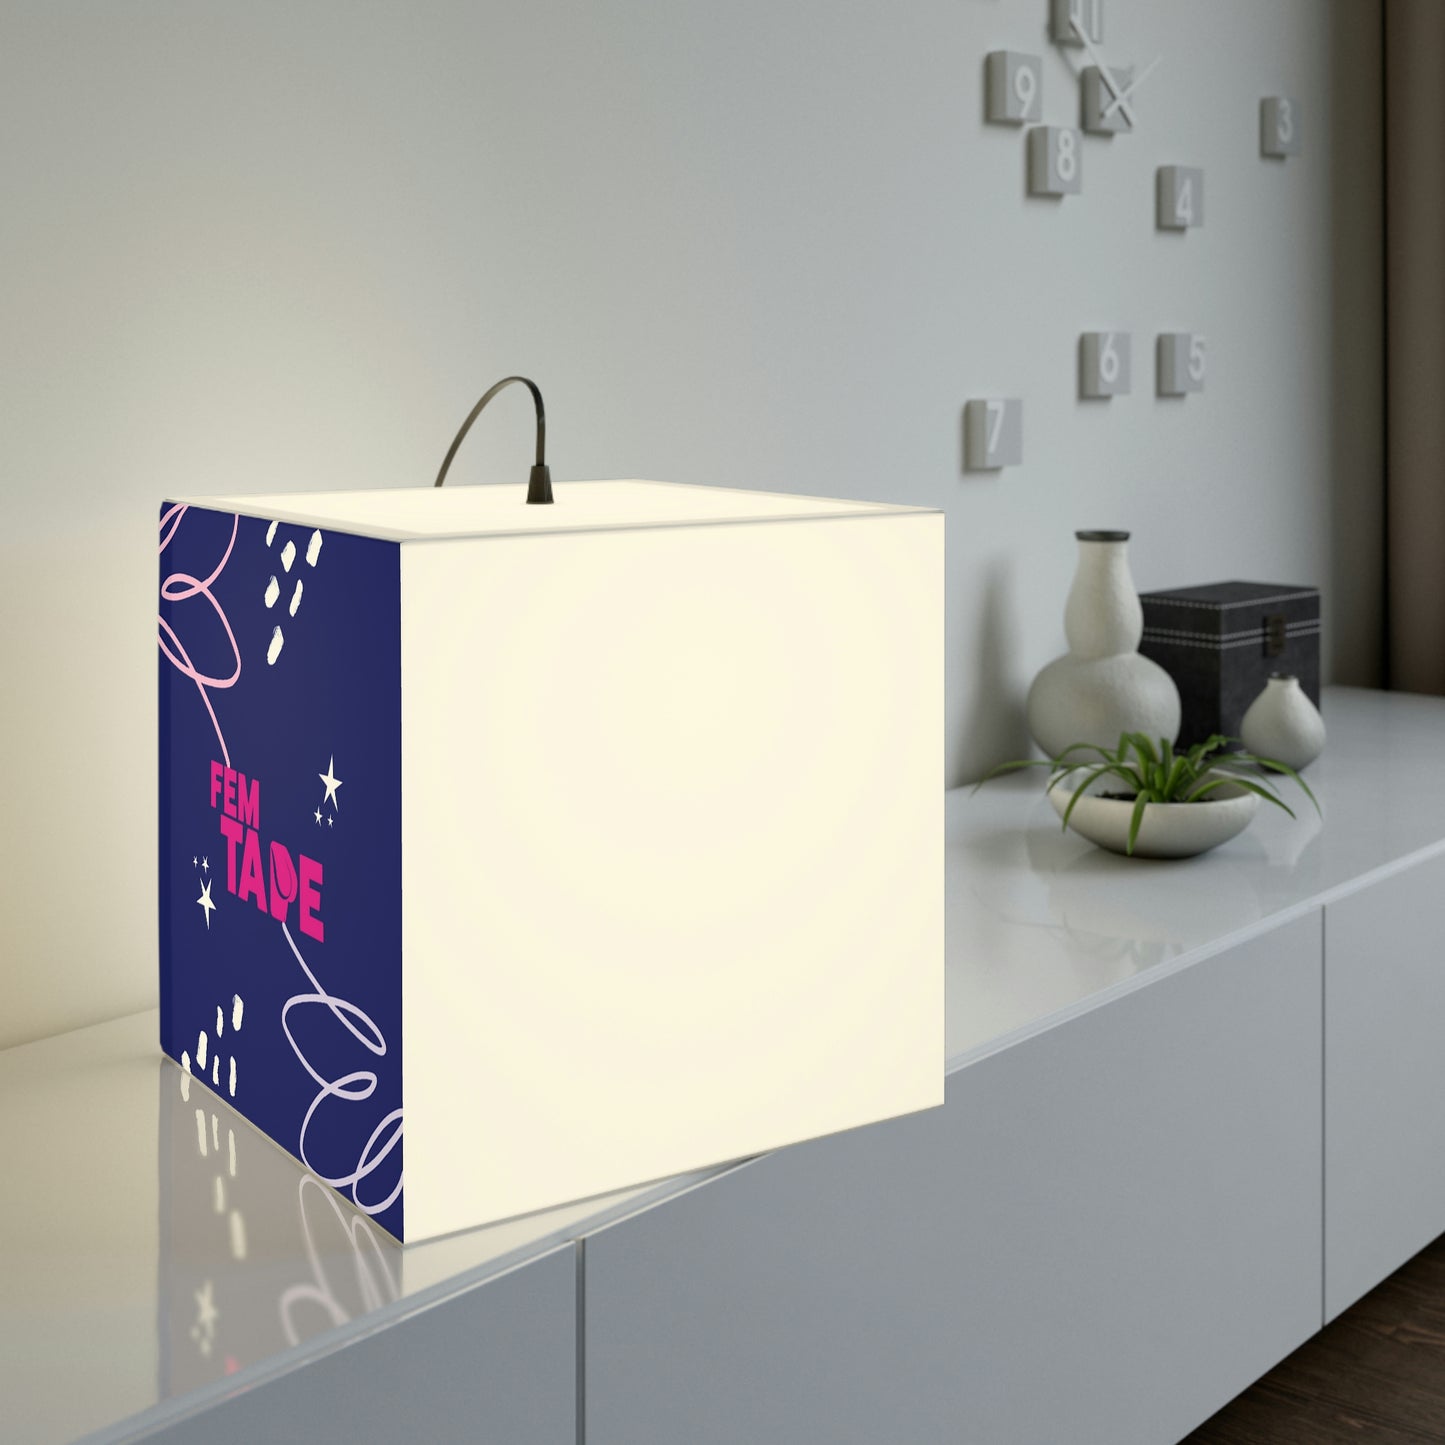 Promotional Joy Light Cube Lamp FemTape